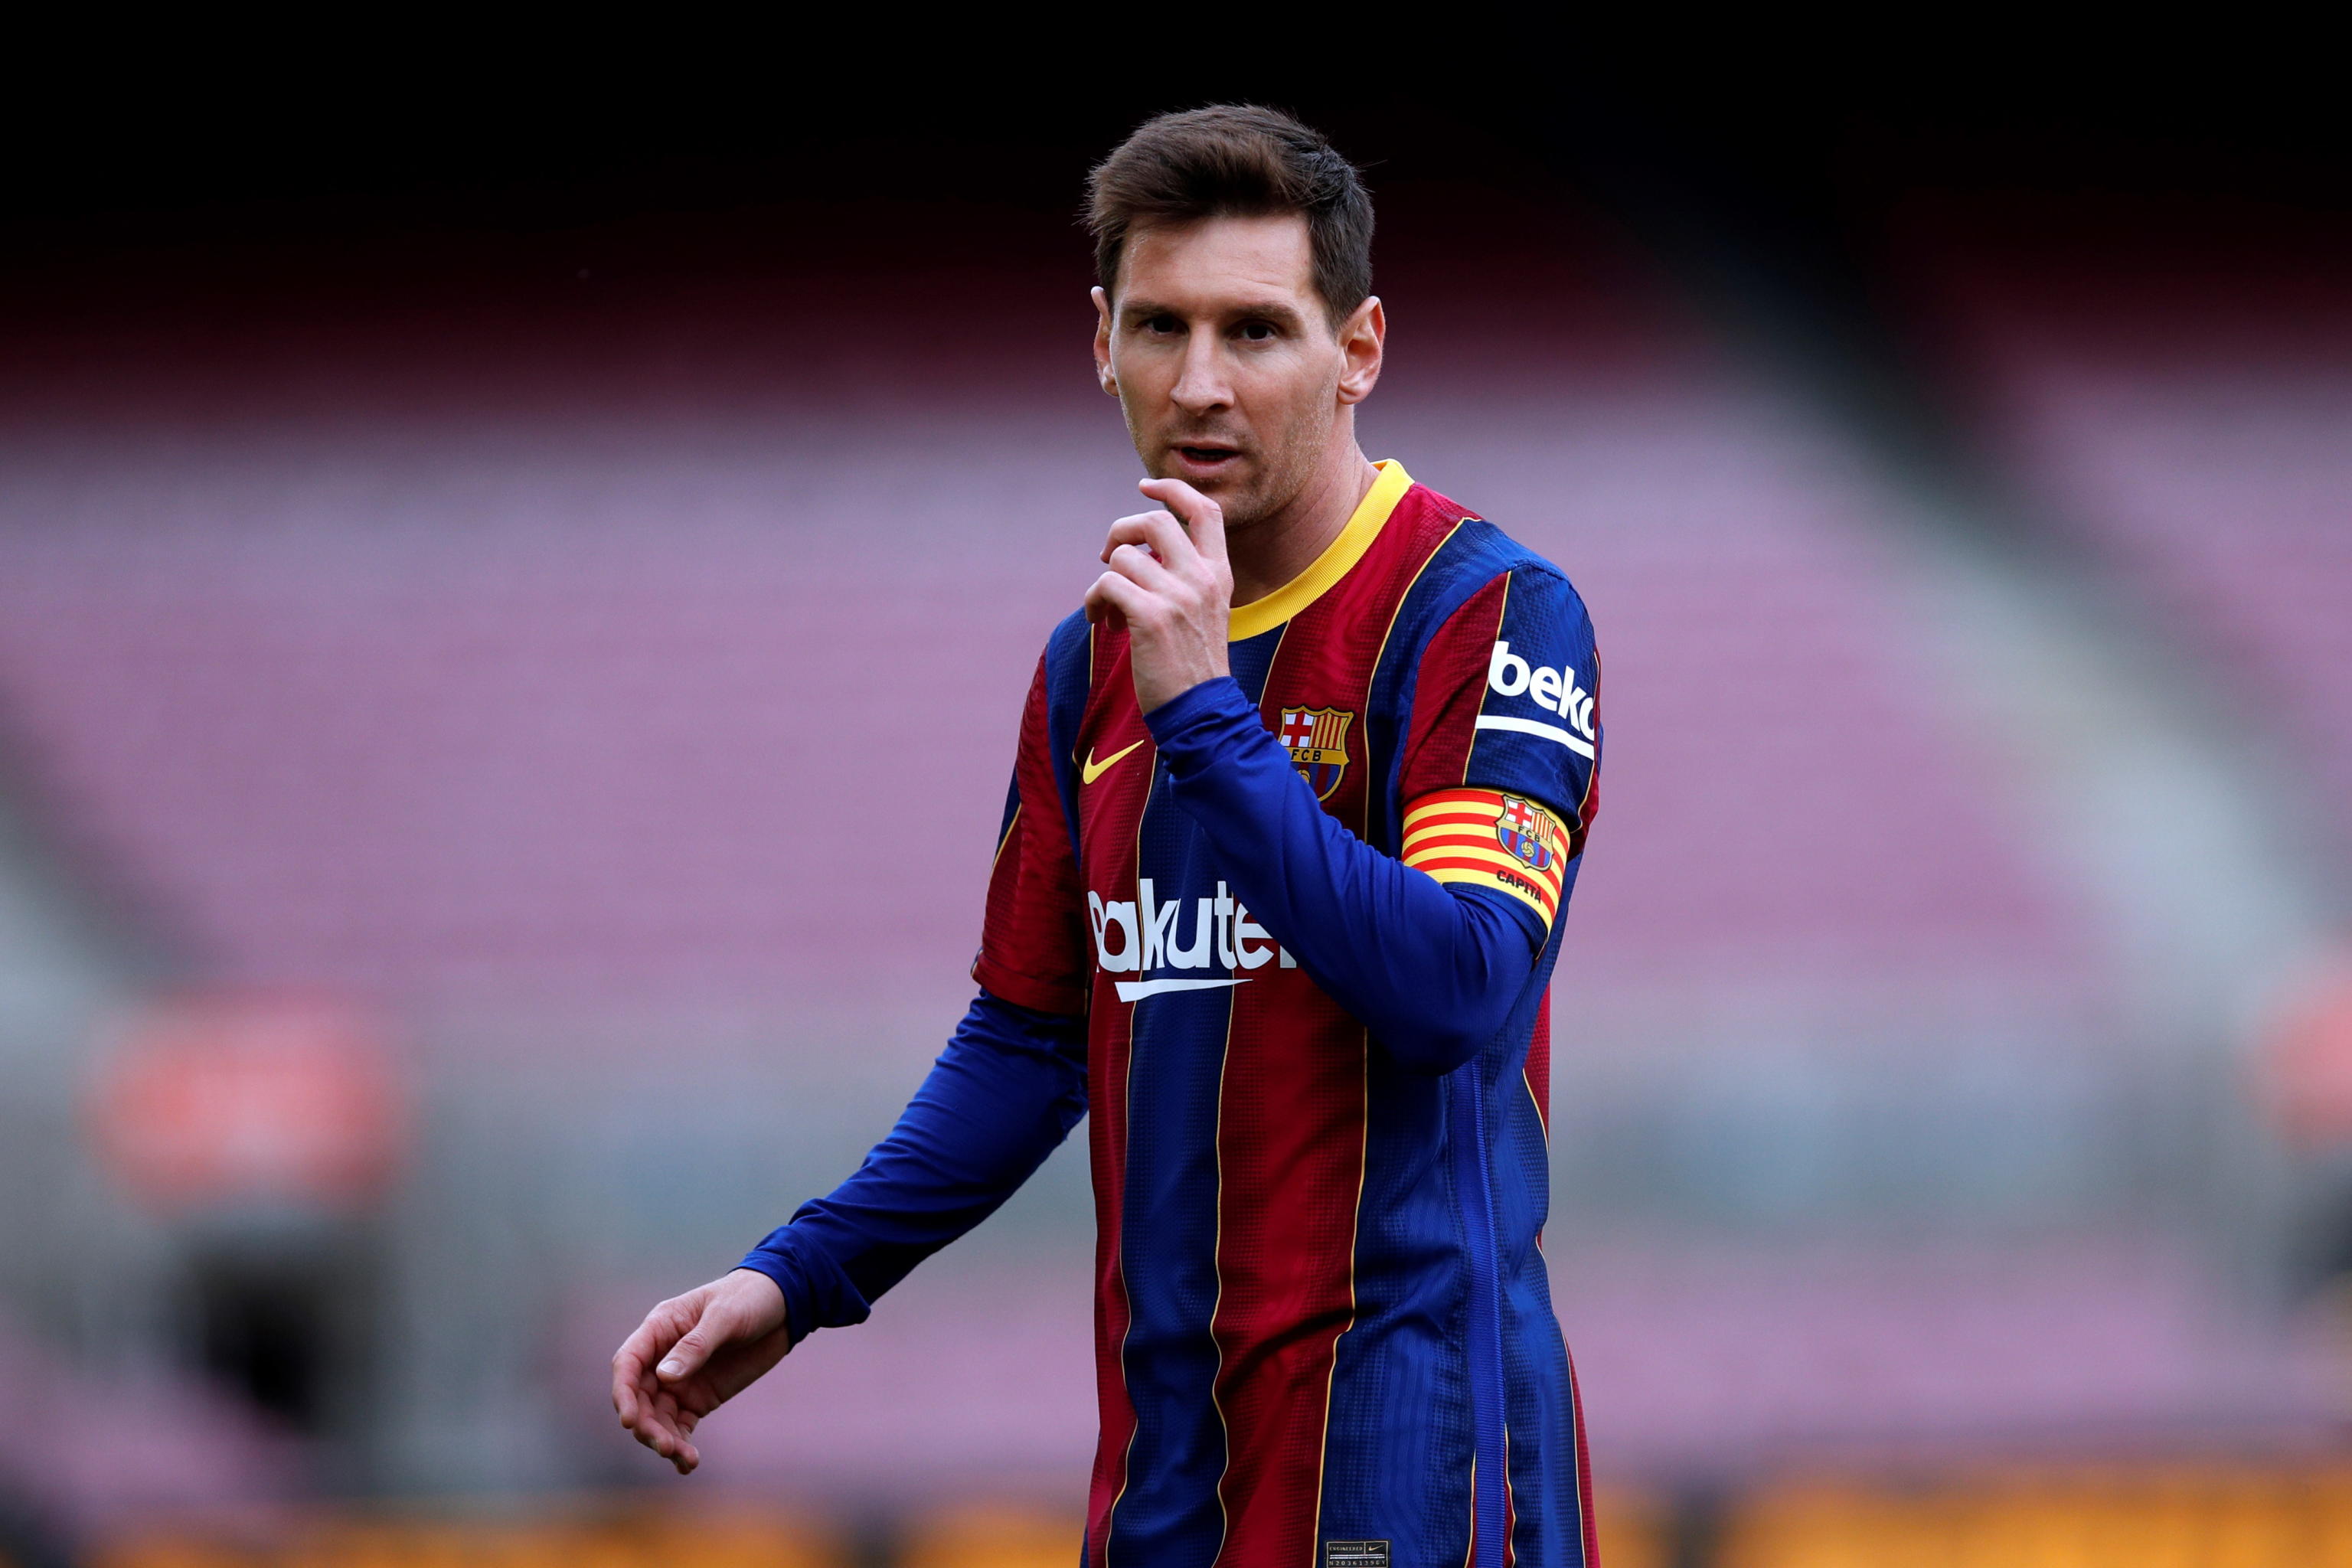 Mercato: Messi, Ramos e Donnarumma, quanti affari a parametro zero